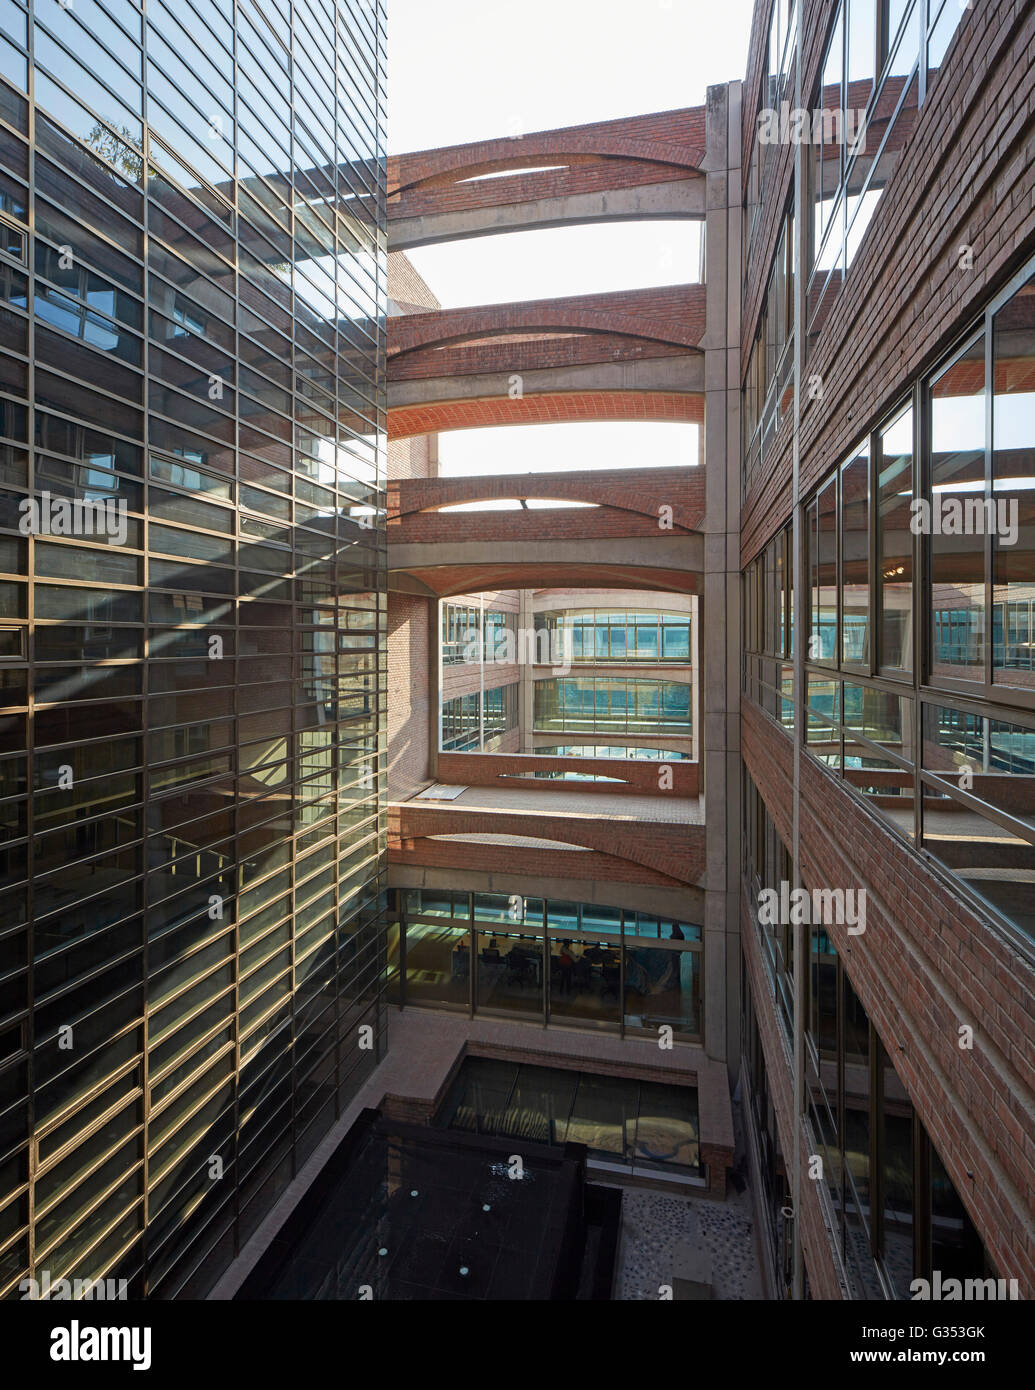 Hof Lücke zwischen den Blöcken. TrIburg HQ, Gurgaon, Indien. Architekt: SPA Design, 2015. Stockfoto